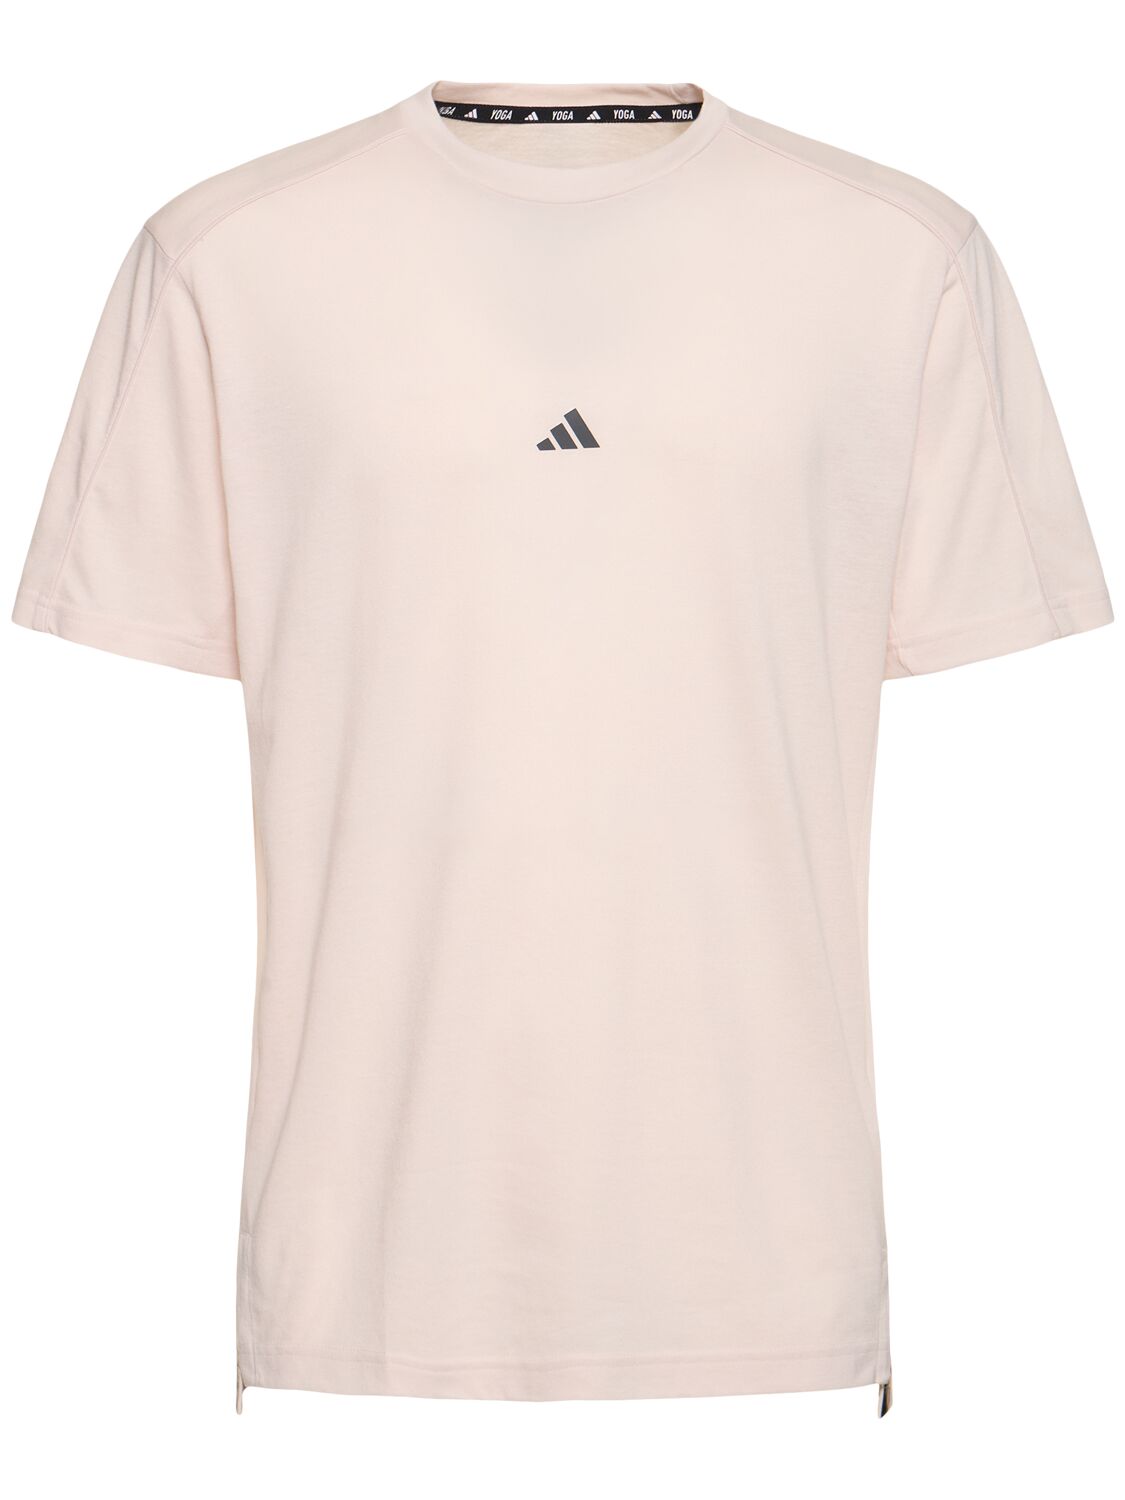 Image of Yoga Short Sleeve T-shirt